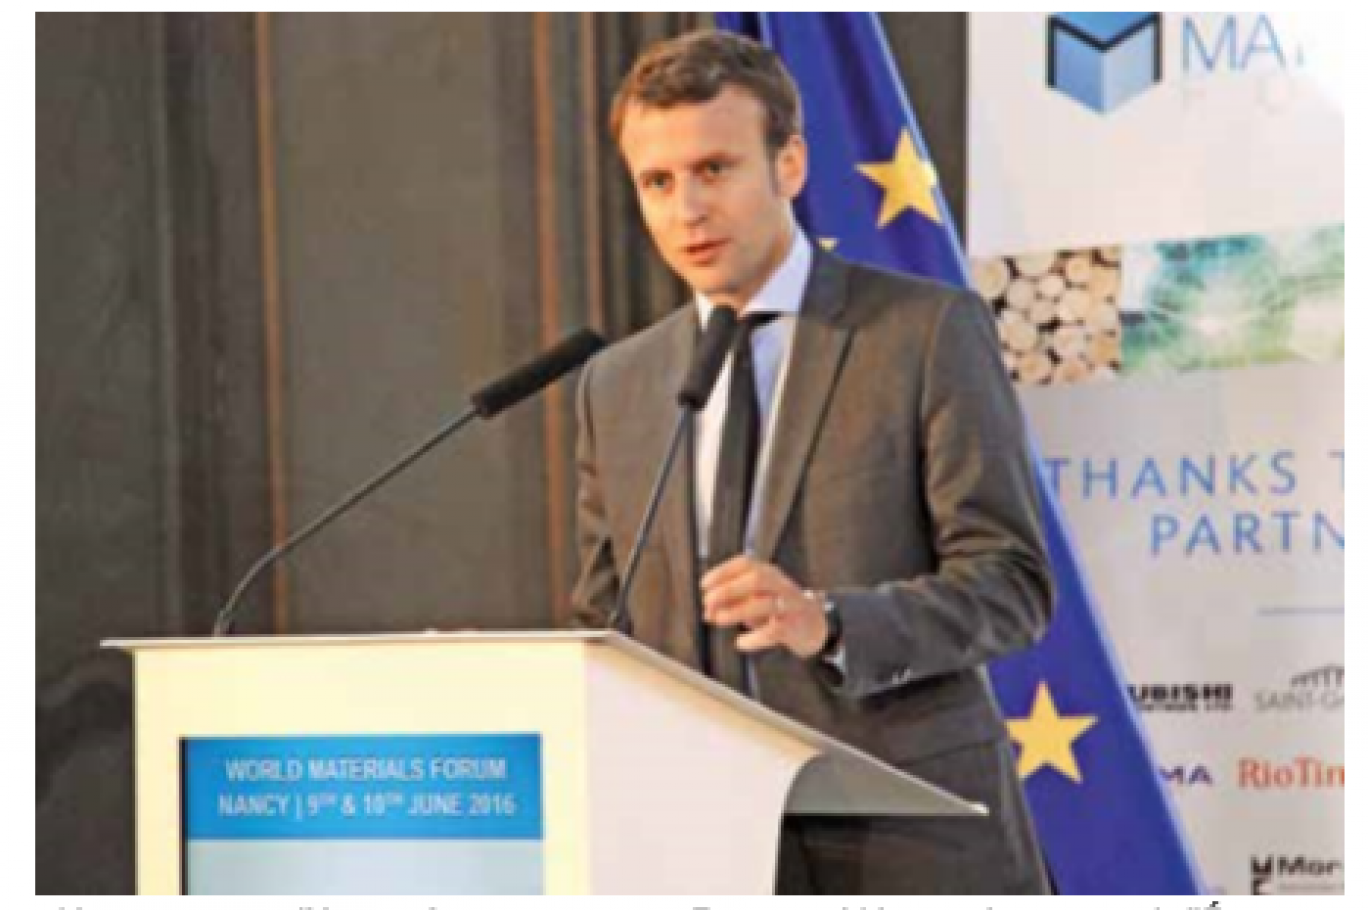 «Un nouveau modèle est nécessaire», assure Emmanuel Macron, le ministre de l’Économie à l’occasion du World Materials Forum à Nancy.  Contactez